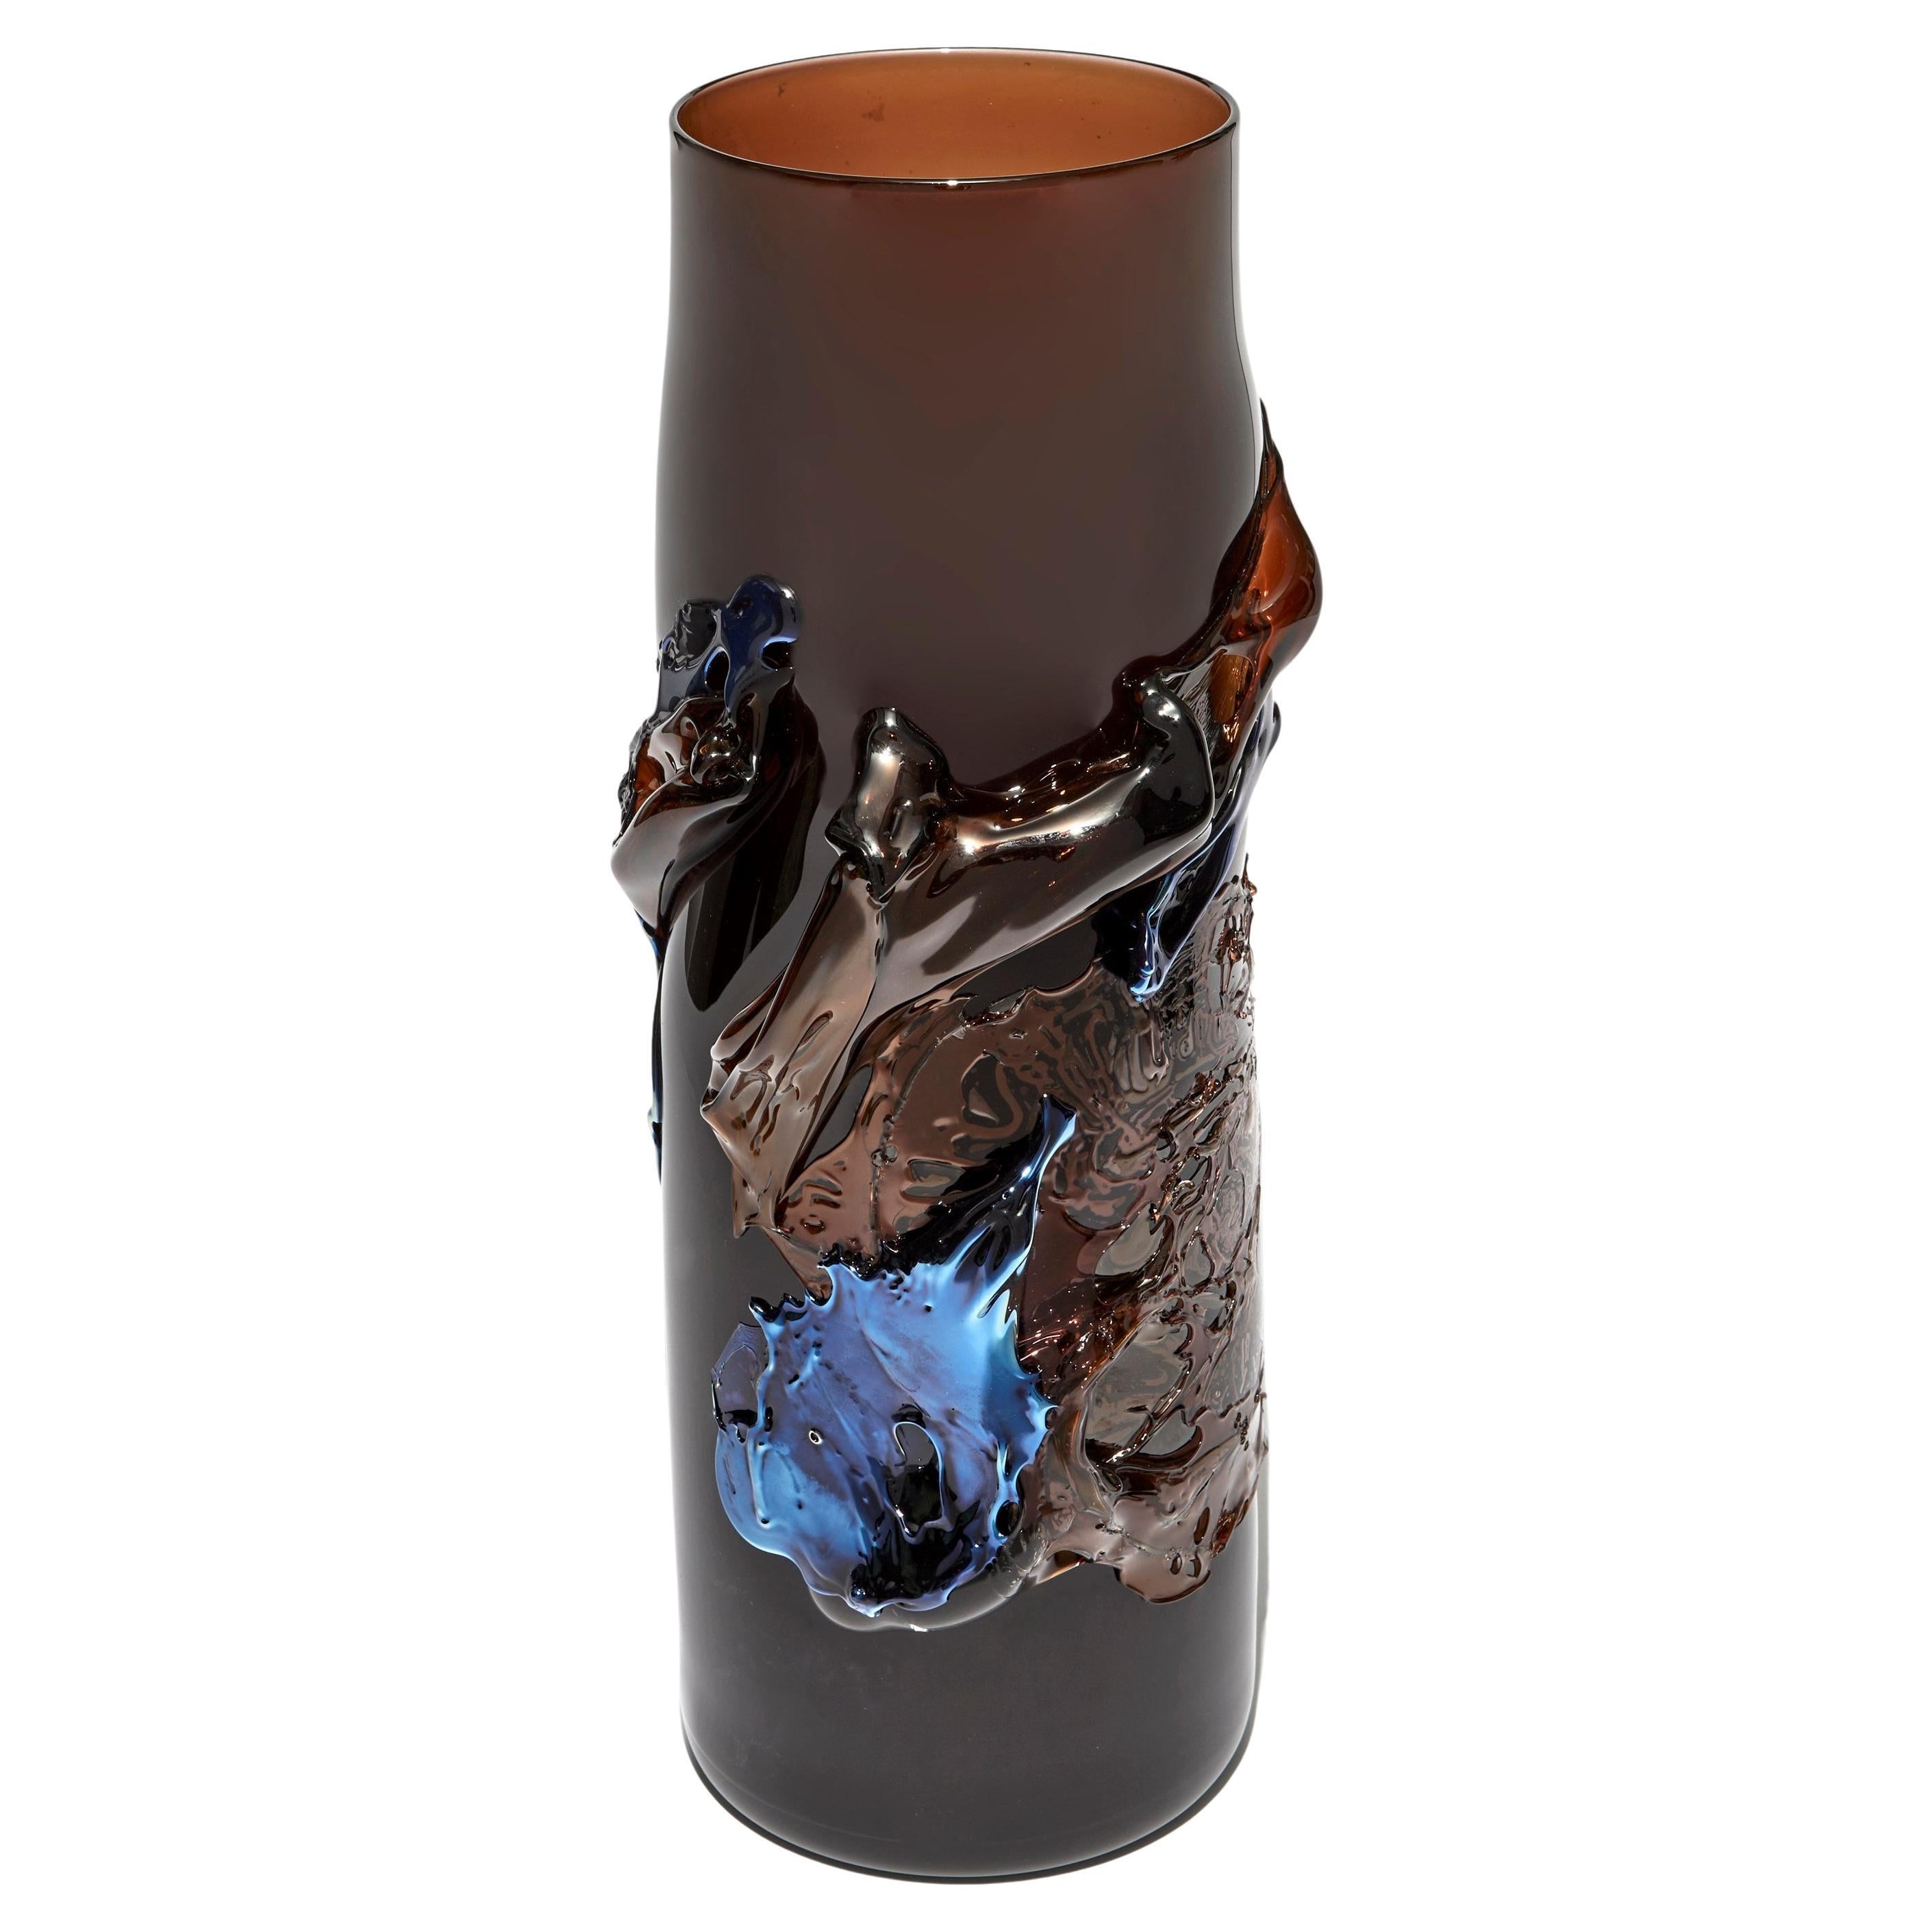 Panorama-Vase aus dunklem Bernstein, eine skulpturale mundgeblasene Glasvase von Bethany Wood